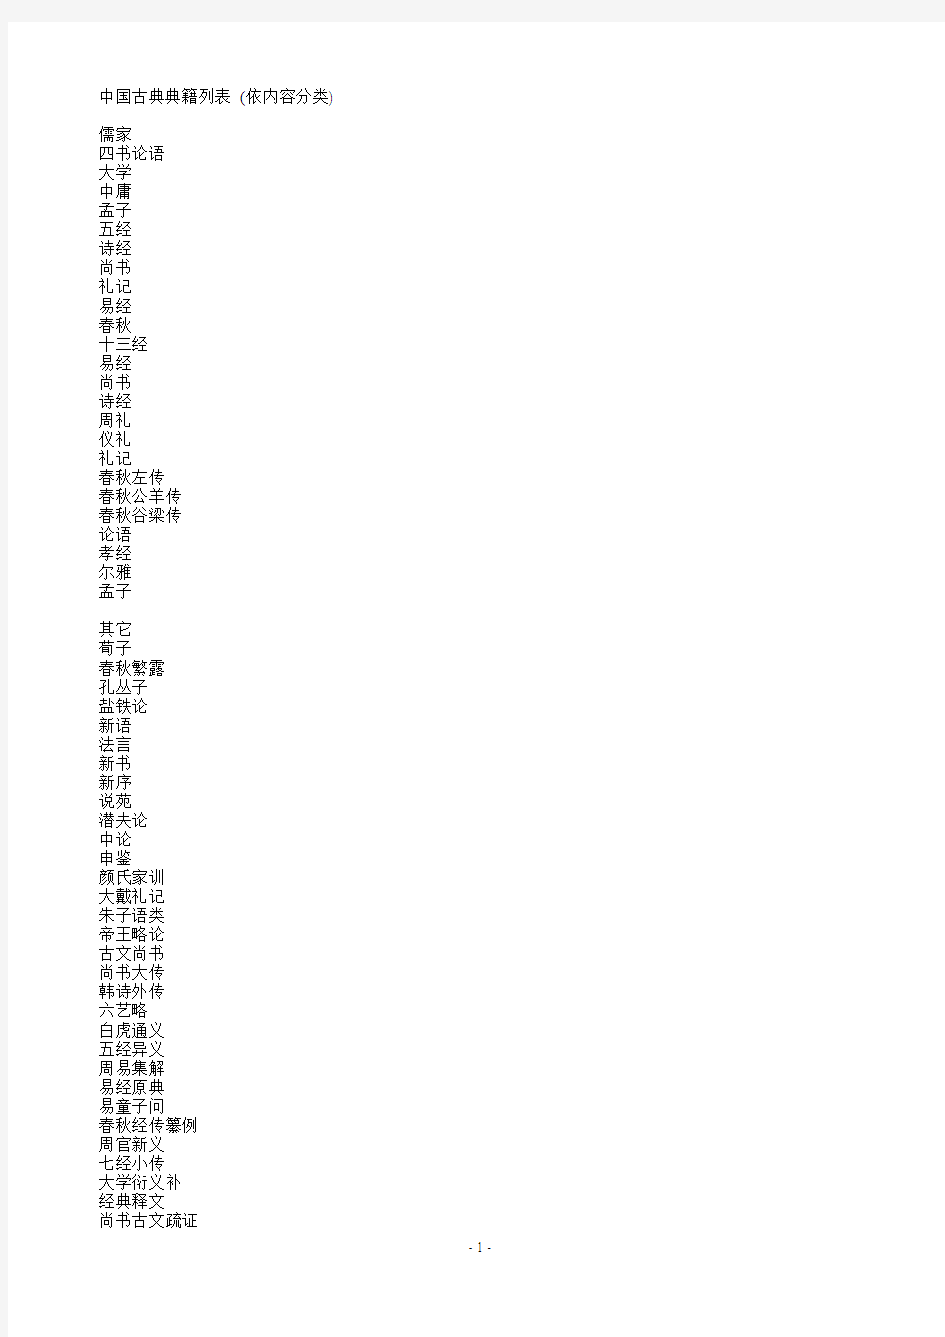 中国古典典籍列表 (依内容分类)